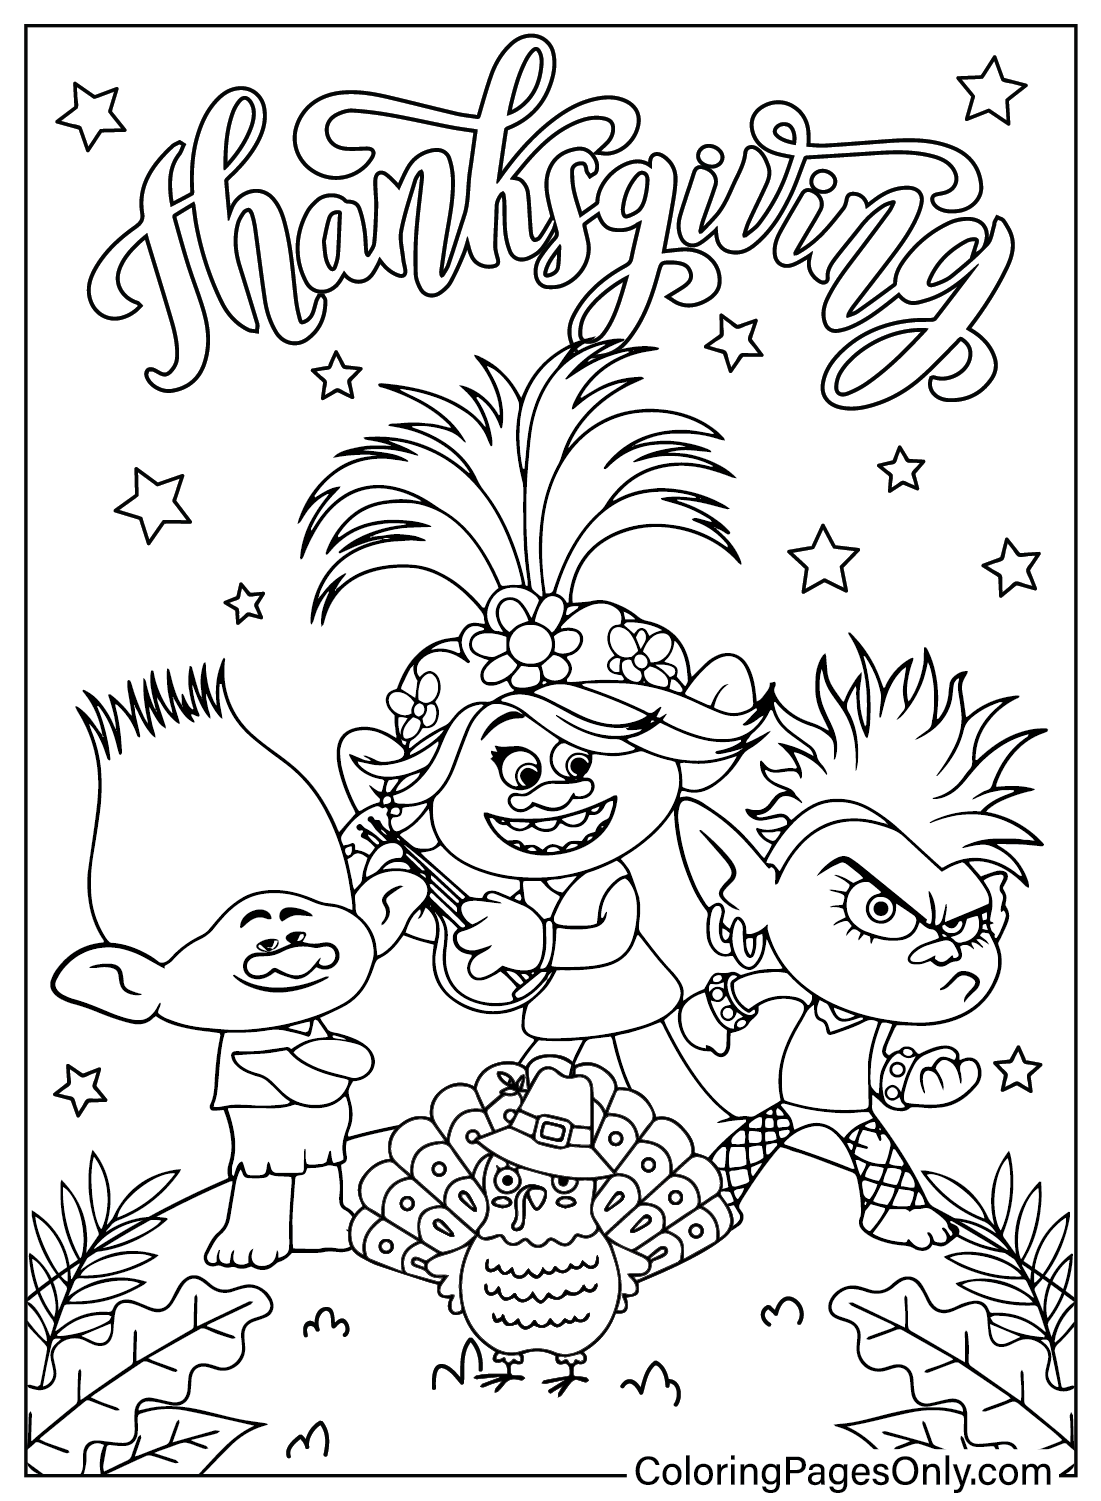 Página para colorir dos Trolls de Ação de Graças do desenho animado de Ação de Graças